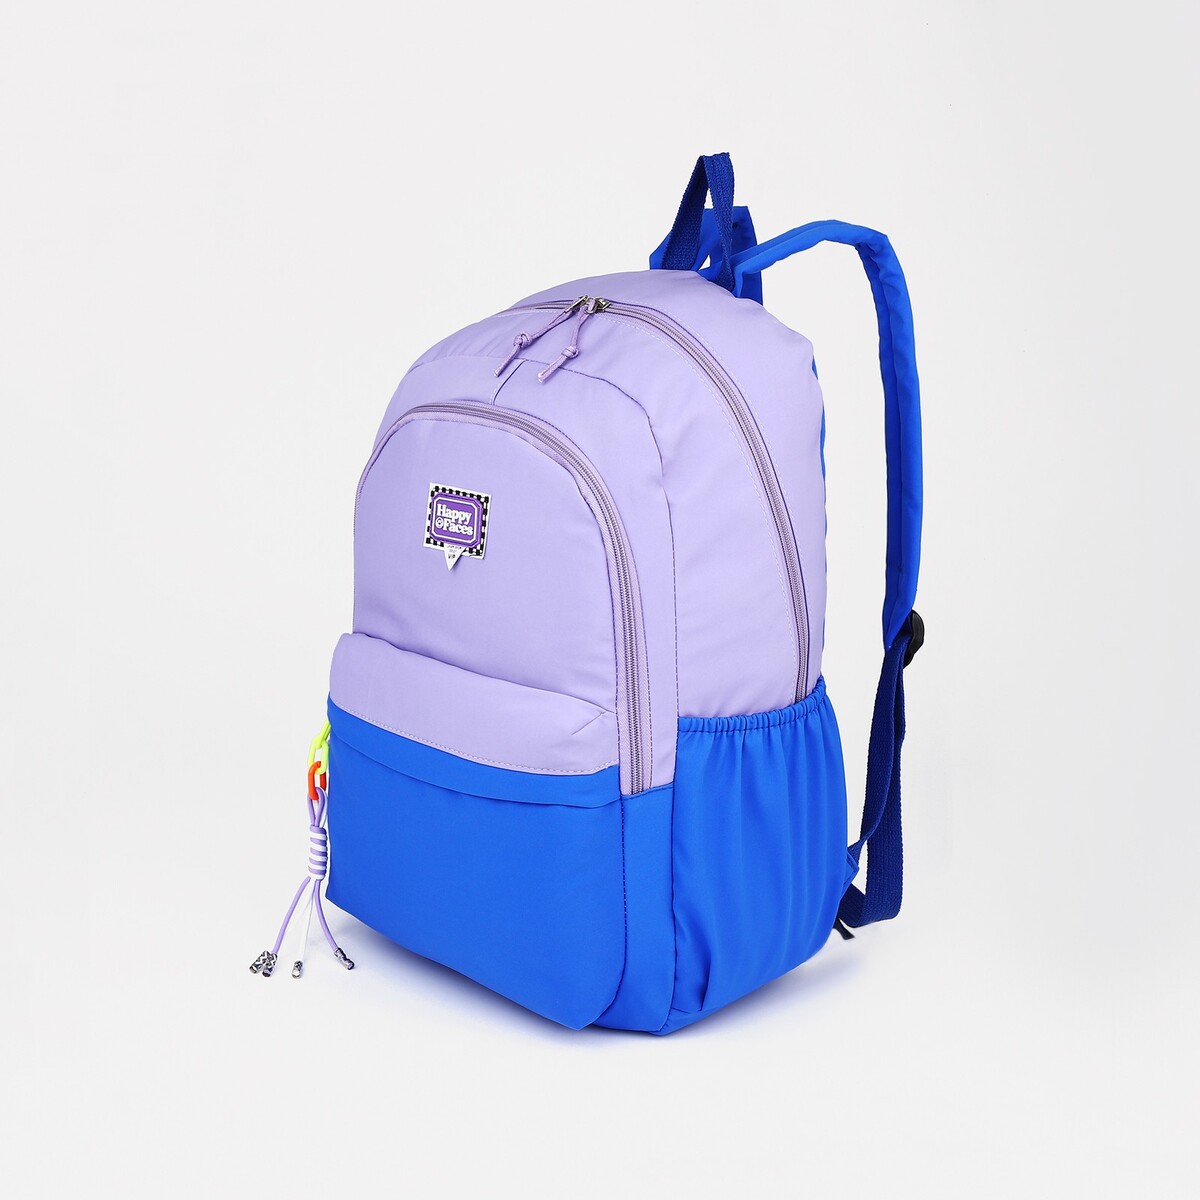 Рюкзак на молнии, 4 наружных кармана, цвет сиреневый/синий рюкзак туристический на молнии 4 наружных кармана синий